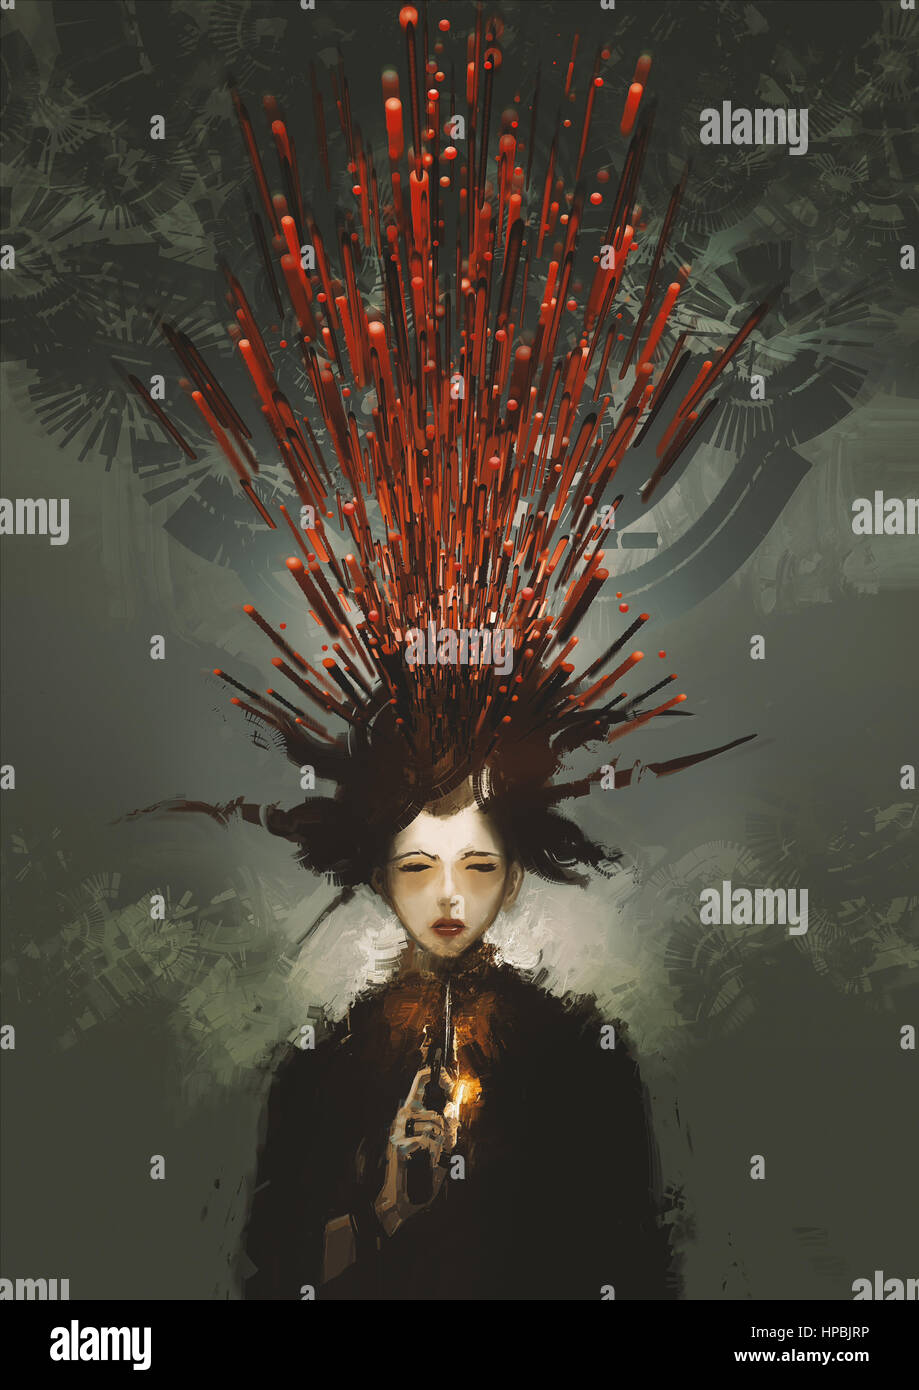 Frau begehen Selbstmord mit Pistole und metaphorische Blut, digitale Illustration Malerei Stockfoto